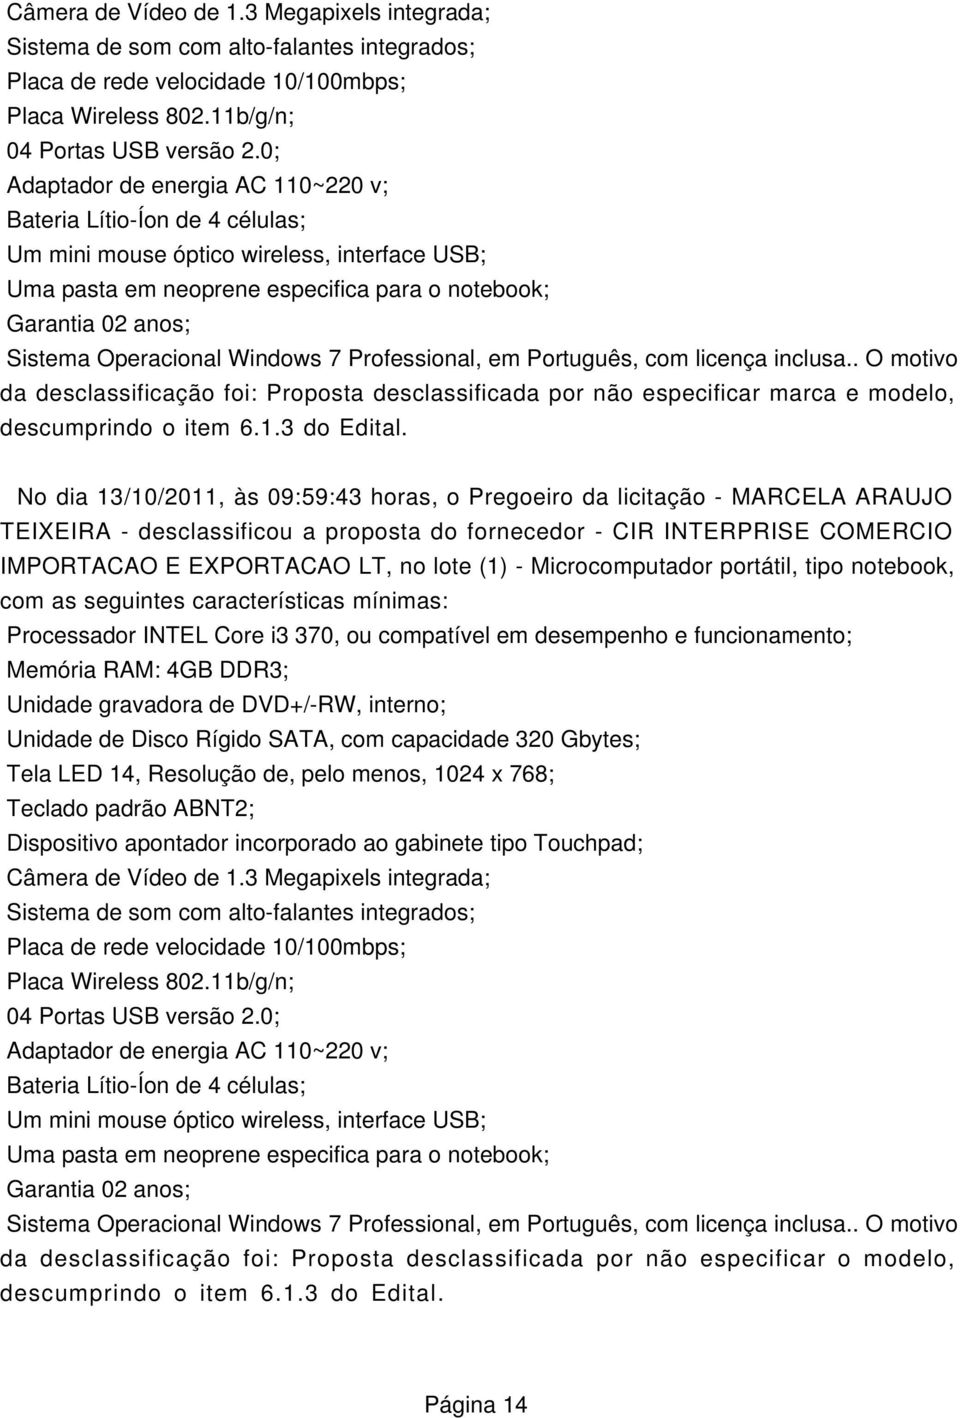 TEIXEIRA - desclassificou a proposta do fornecedor - CIR INTERPRISE COMERCIO IMPORTACAO E EXPORTACAO LT, no lote (1) - Microcomputador portátil, tipo notebook, com as seguintes características